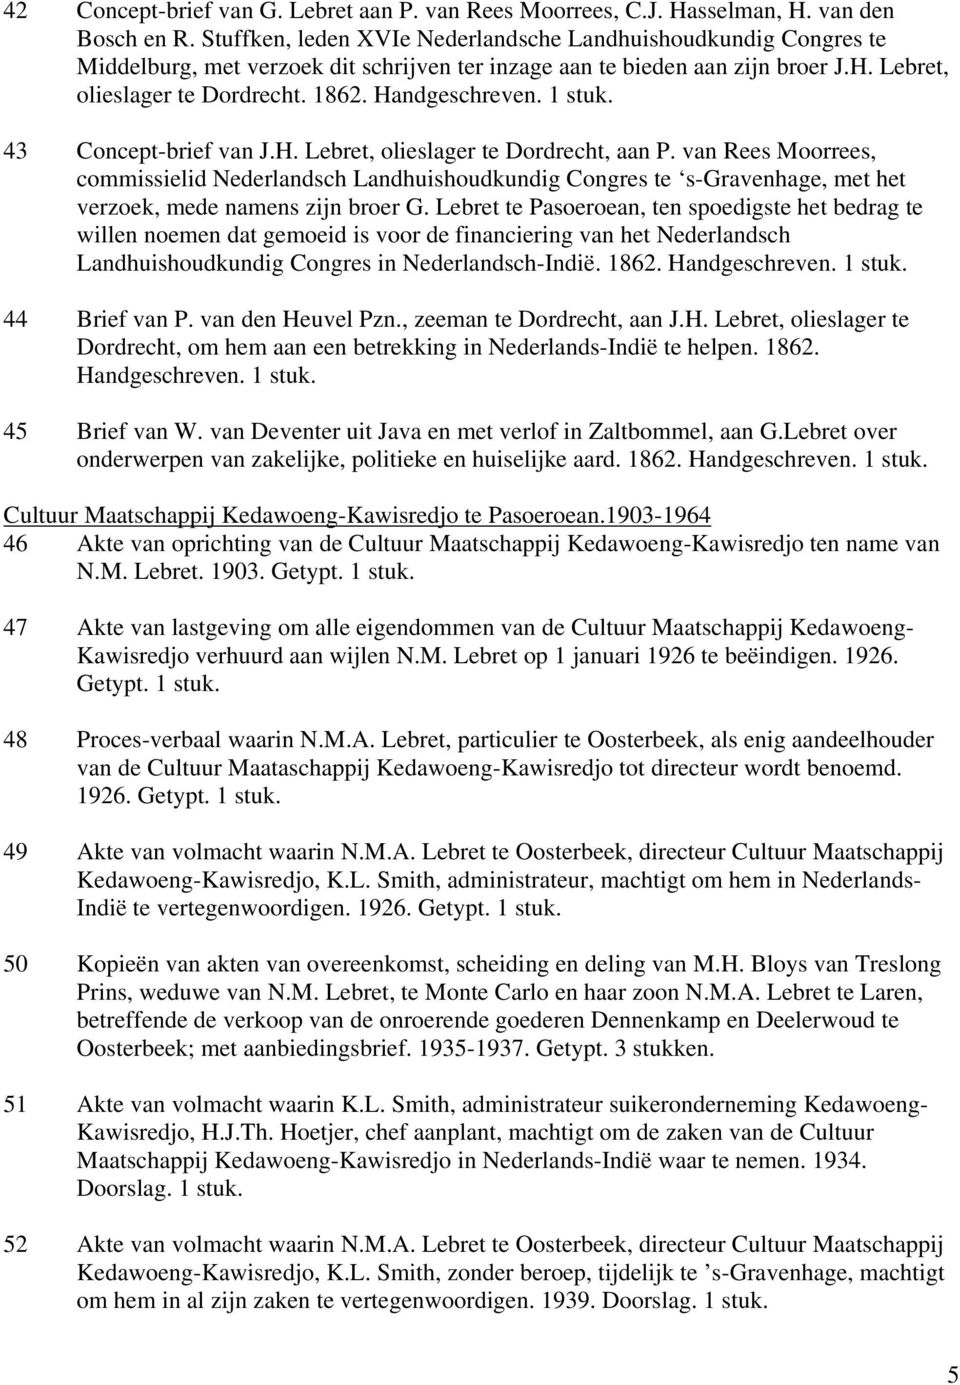 43 Concept-brief van J.H. Lebret, olieslager te Dordrecht, aan P. van Rees Moorrees, commissielid Nederlandsch Landhuishoudkundig Congres te s-gravenhage, met het verzoek, mede namens zijn broer G.